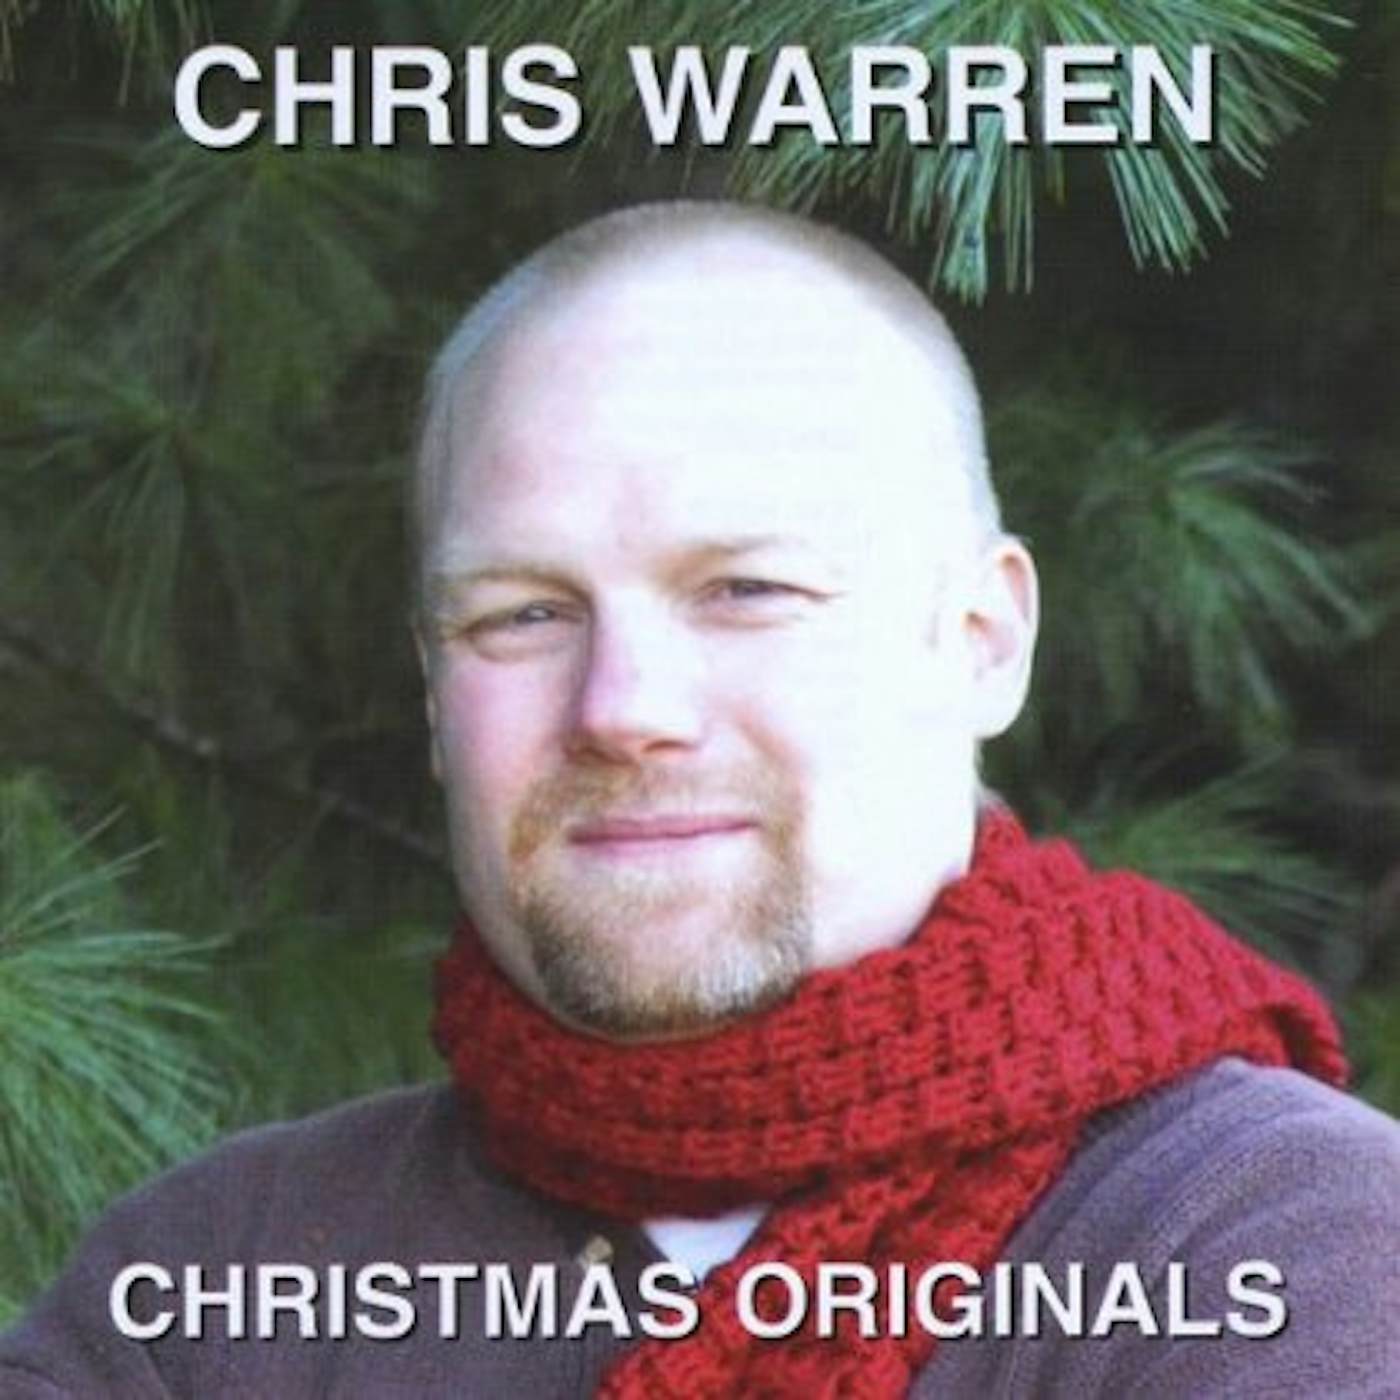 Chris Warren CHRISTMAS ORIGINALS CD